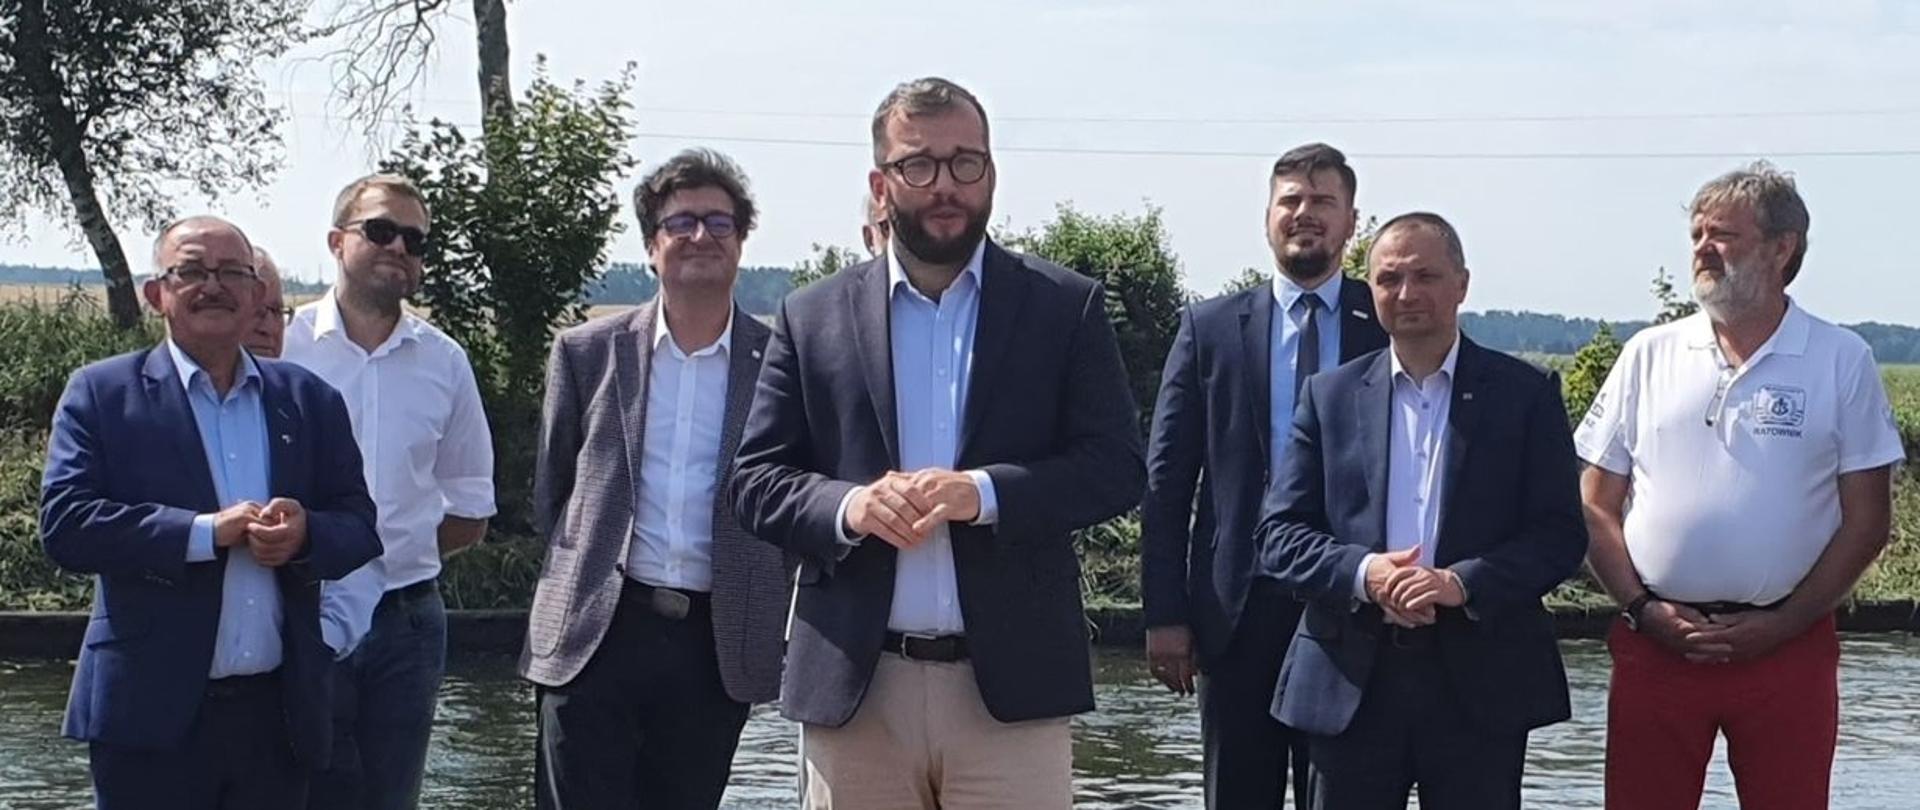 Na zdjęciu widać się osiem osób stojących na tle jeziora, wśród nich znajduje się minister Grzegorz Puda 